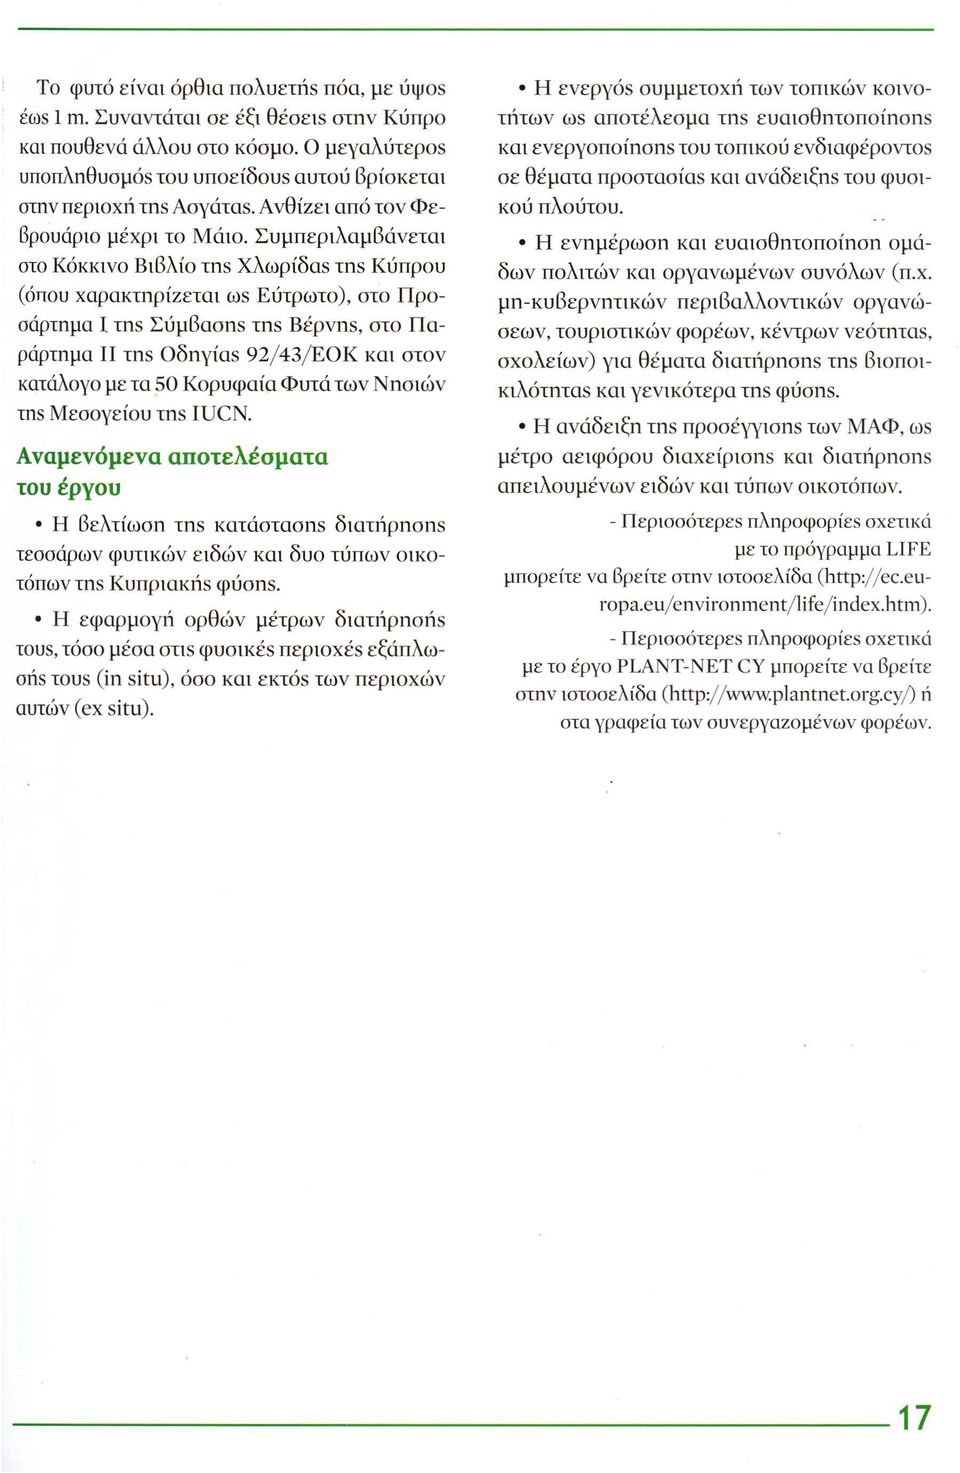 Συμπεριλαμβάνεται στο Κόκκινο Βιβλίο τns Χλωρίδαs τns Κύπρου (όπου χαρακτηρίzεται ωs Εύτρωτο), στο Προσάρτημα Ι τns Σύμβασηs τns Βέρνηs, στο Παράρτημα ΙΙ τηs Οδηγίαs 92/43/ΕΟΚ και στον κατάλογο με τα